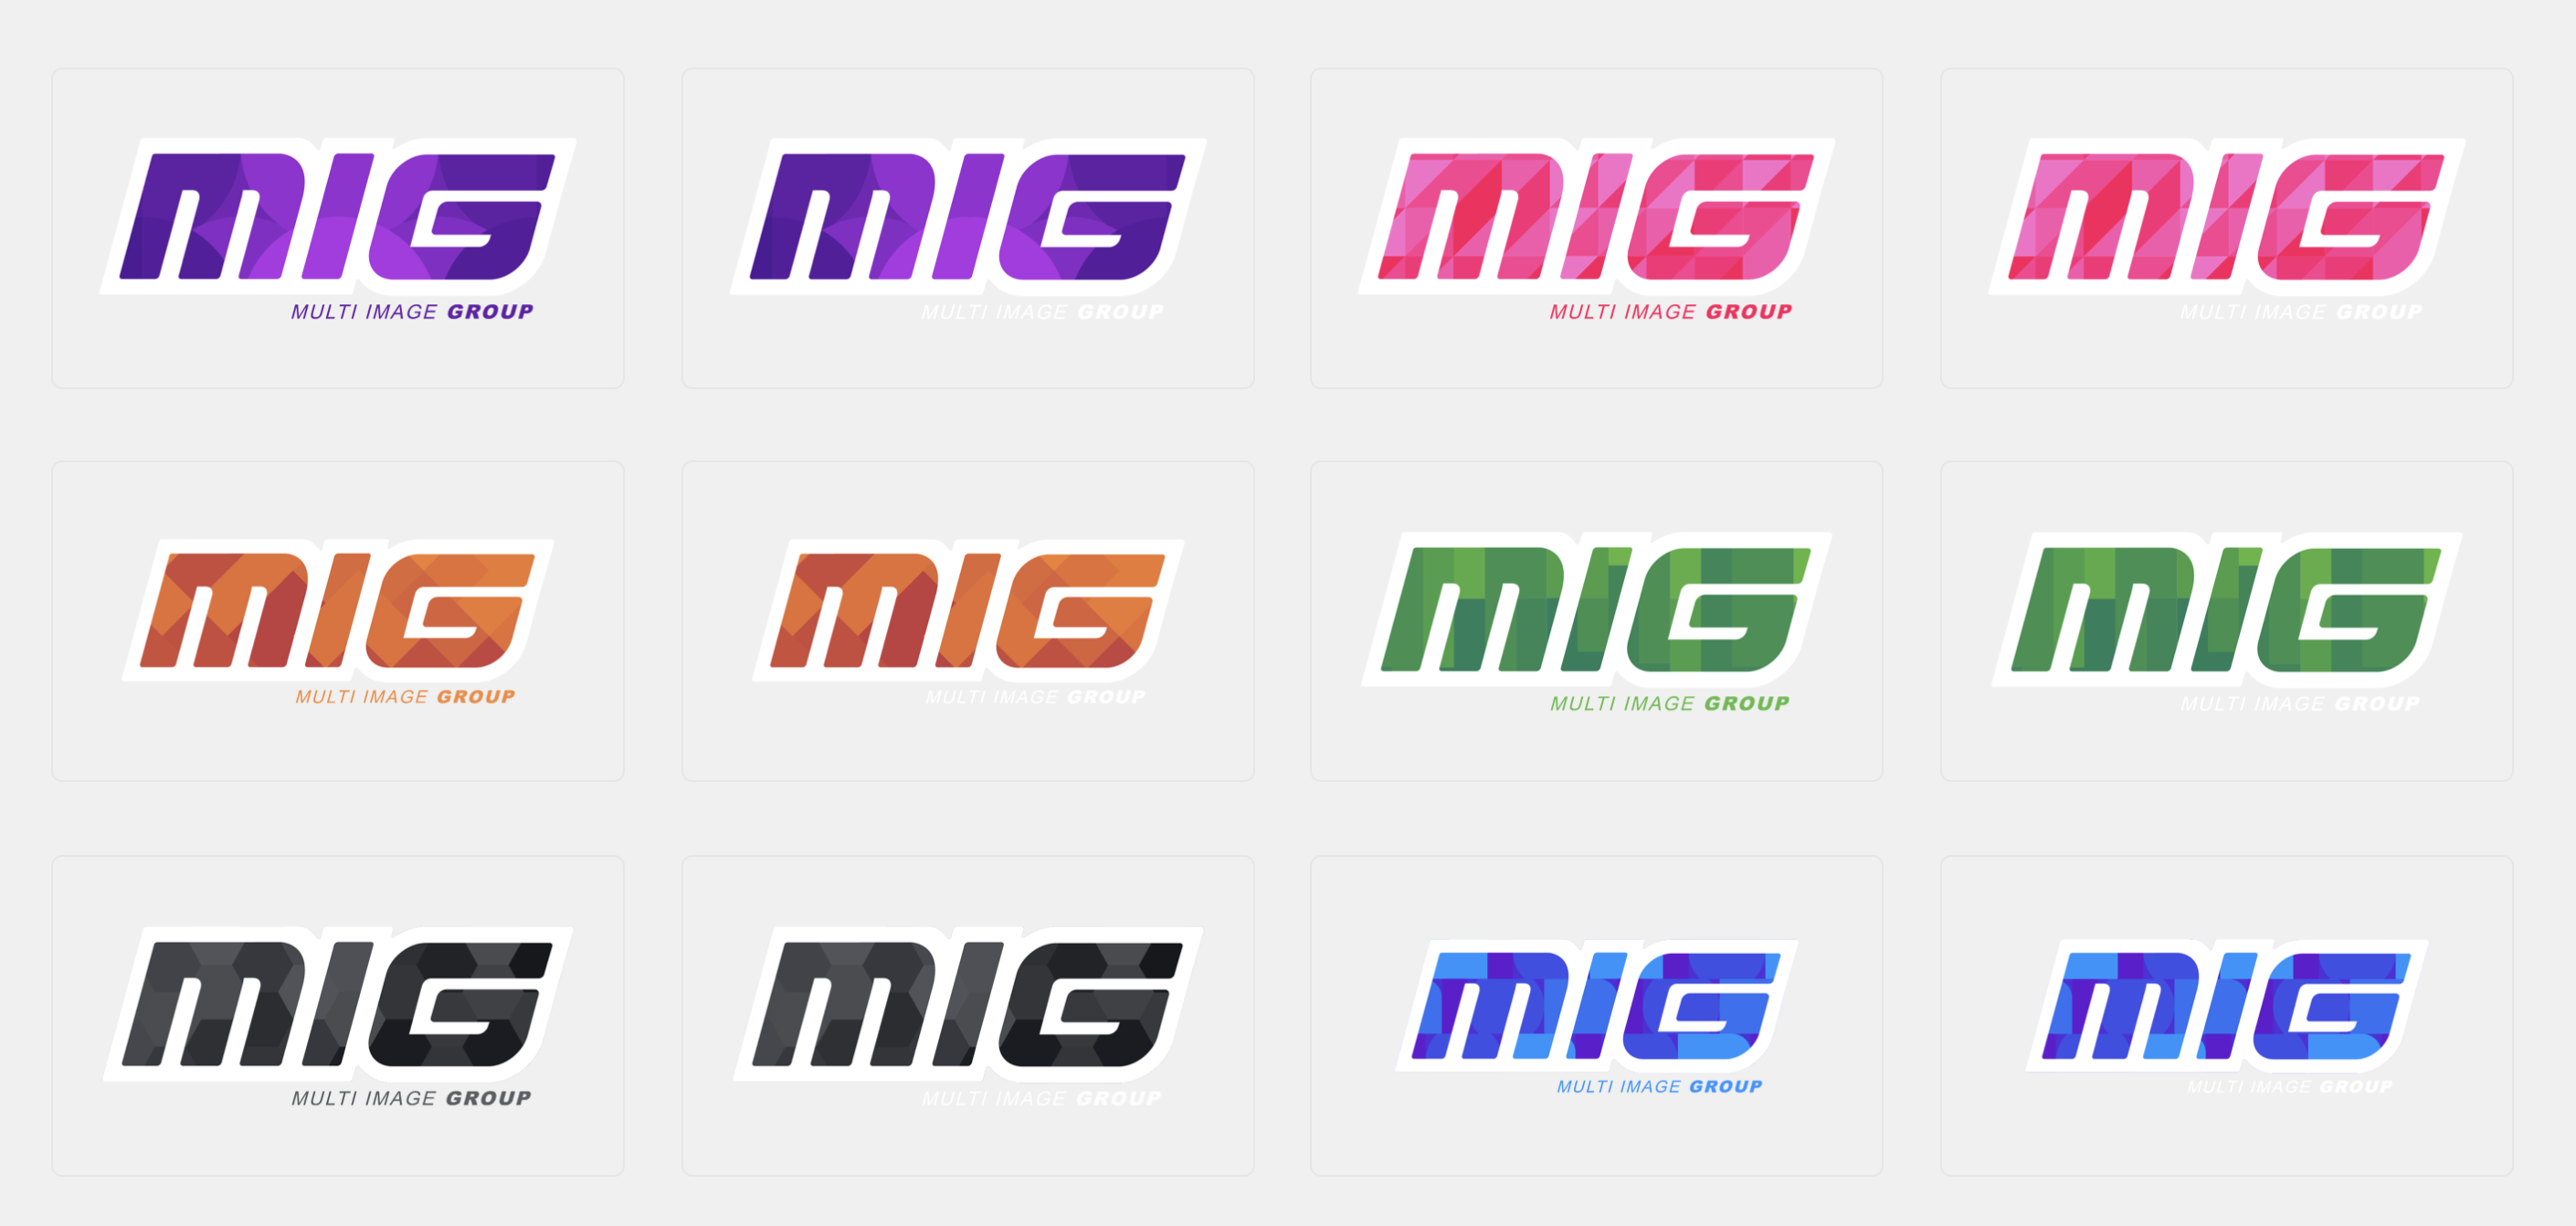 Multi Image Group Logos